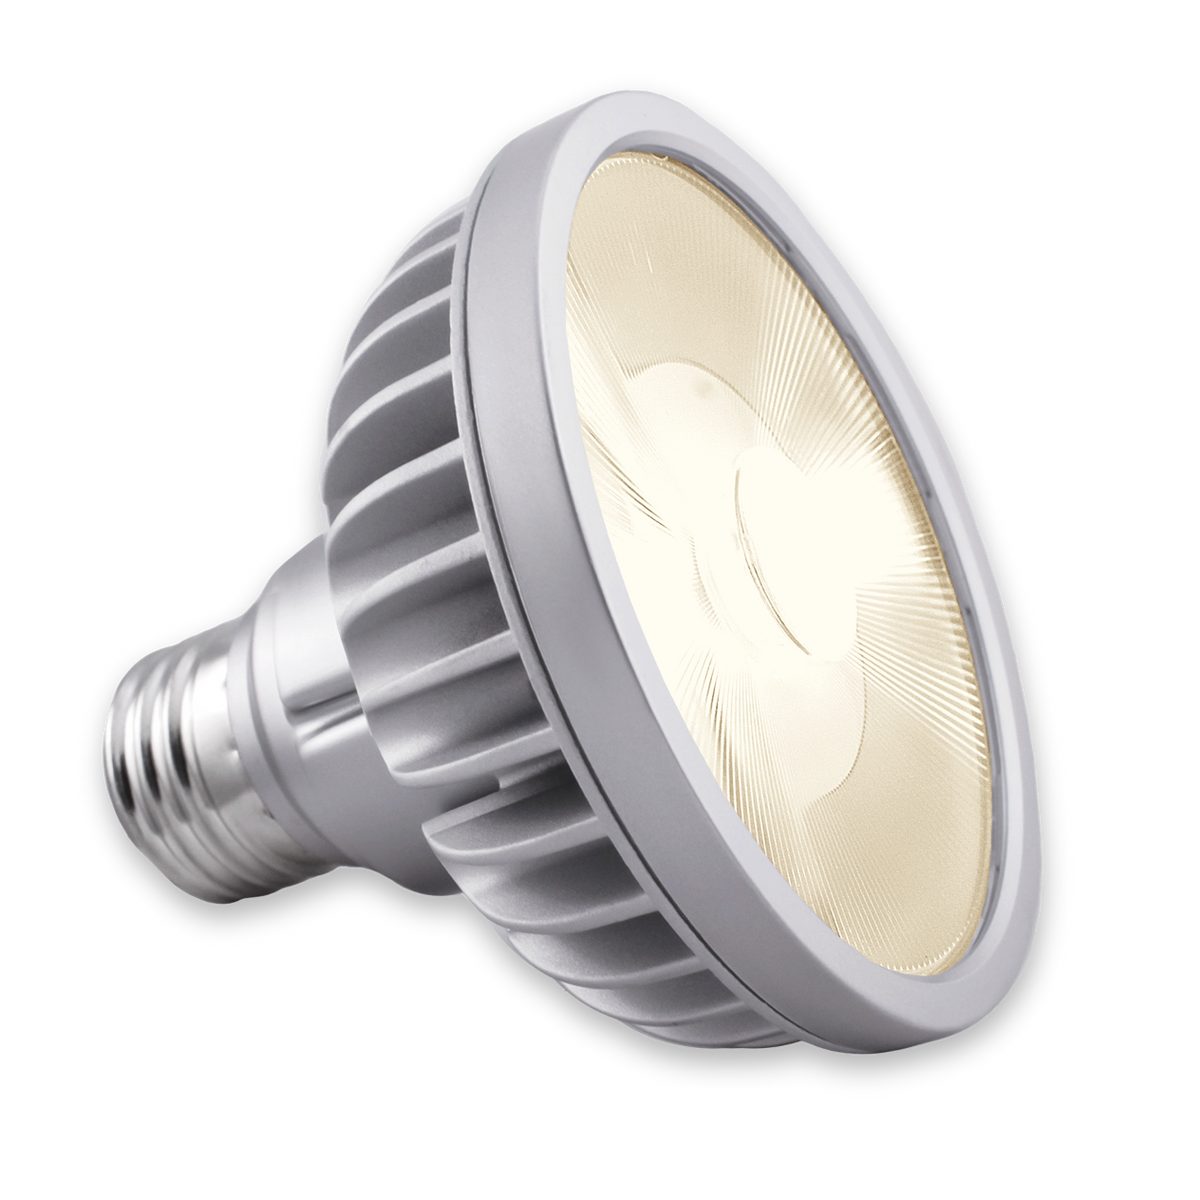 Soraa LED-Leuchtmittel Soraa Vivid 3 Vollspektrum LED PAR30 - 18.5Watt, Spot 9°, E27, Vollspektrum LED - CRI95 R9